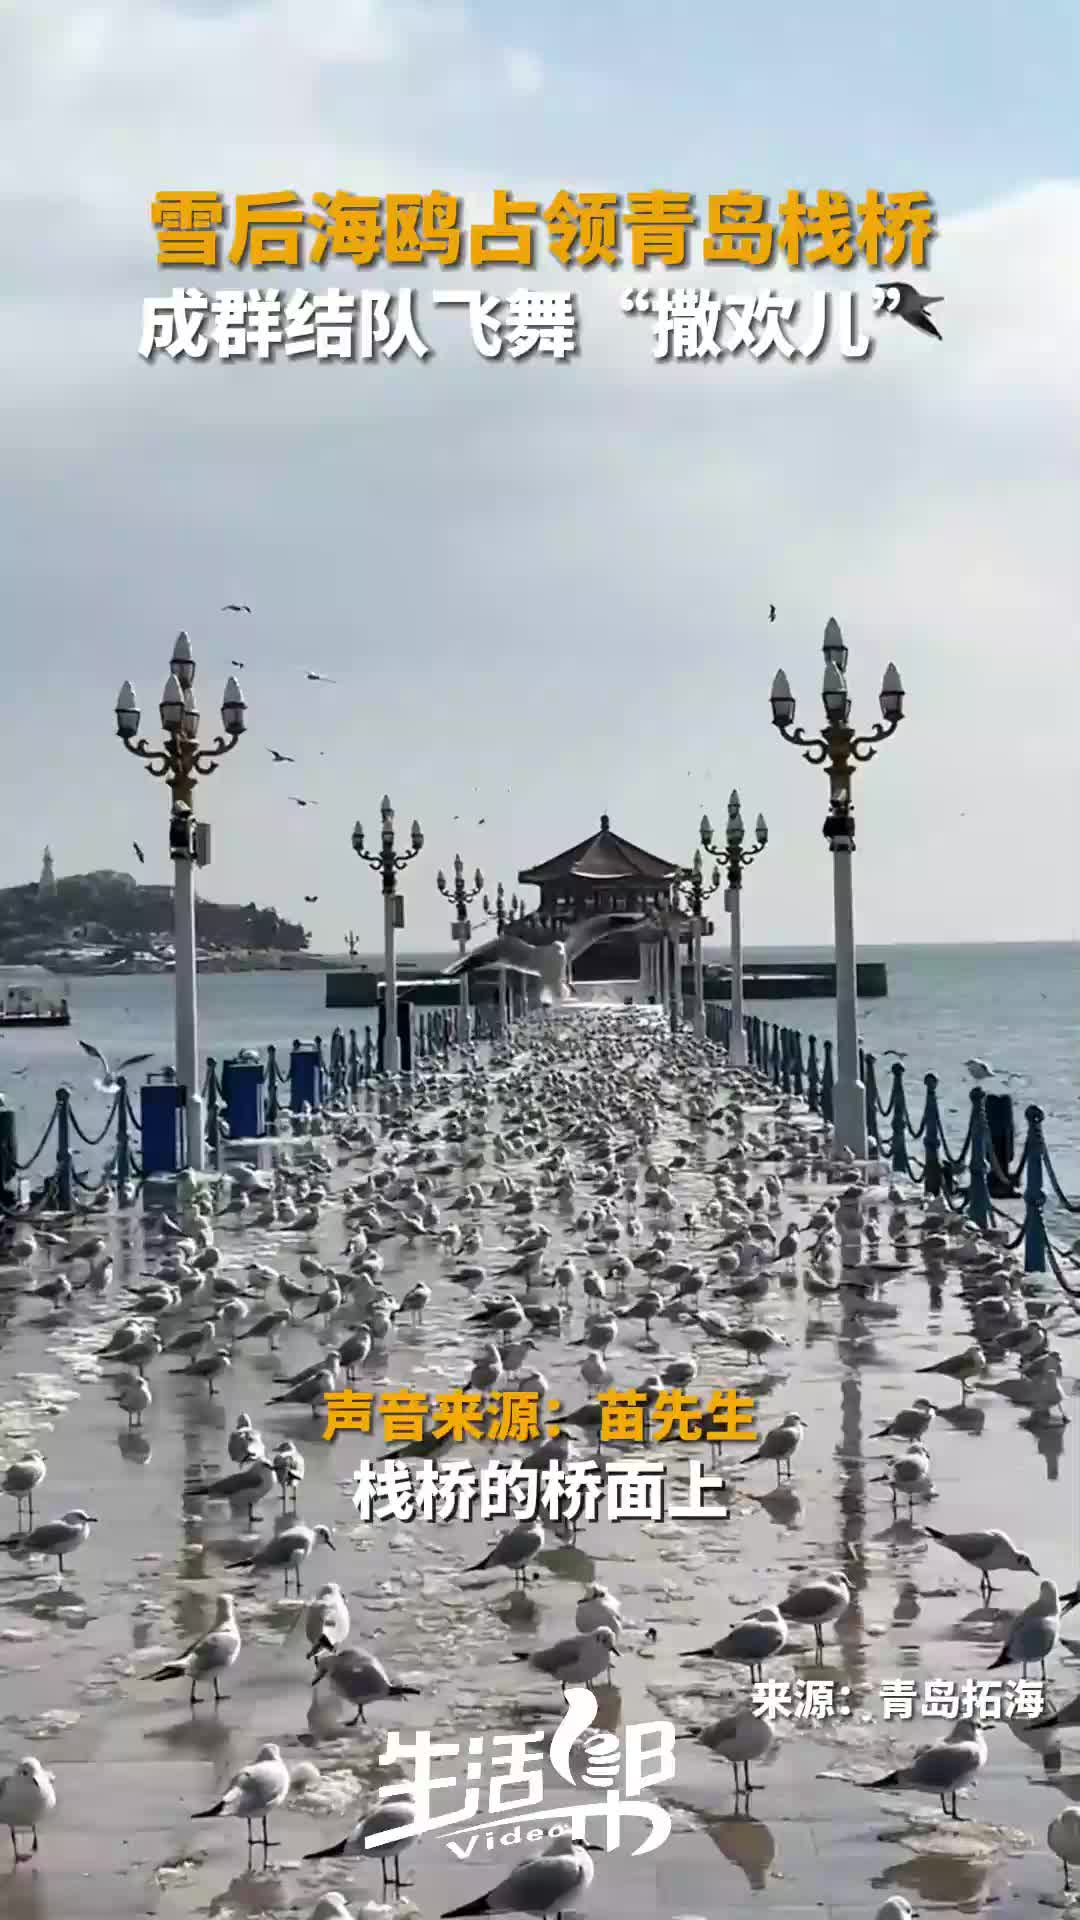 青岛栈桥海鸥文案图片